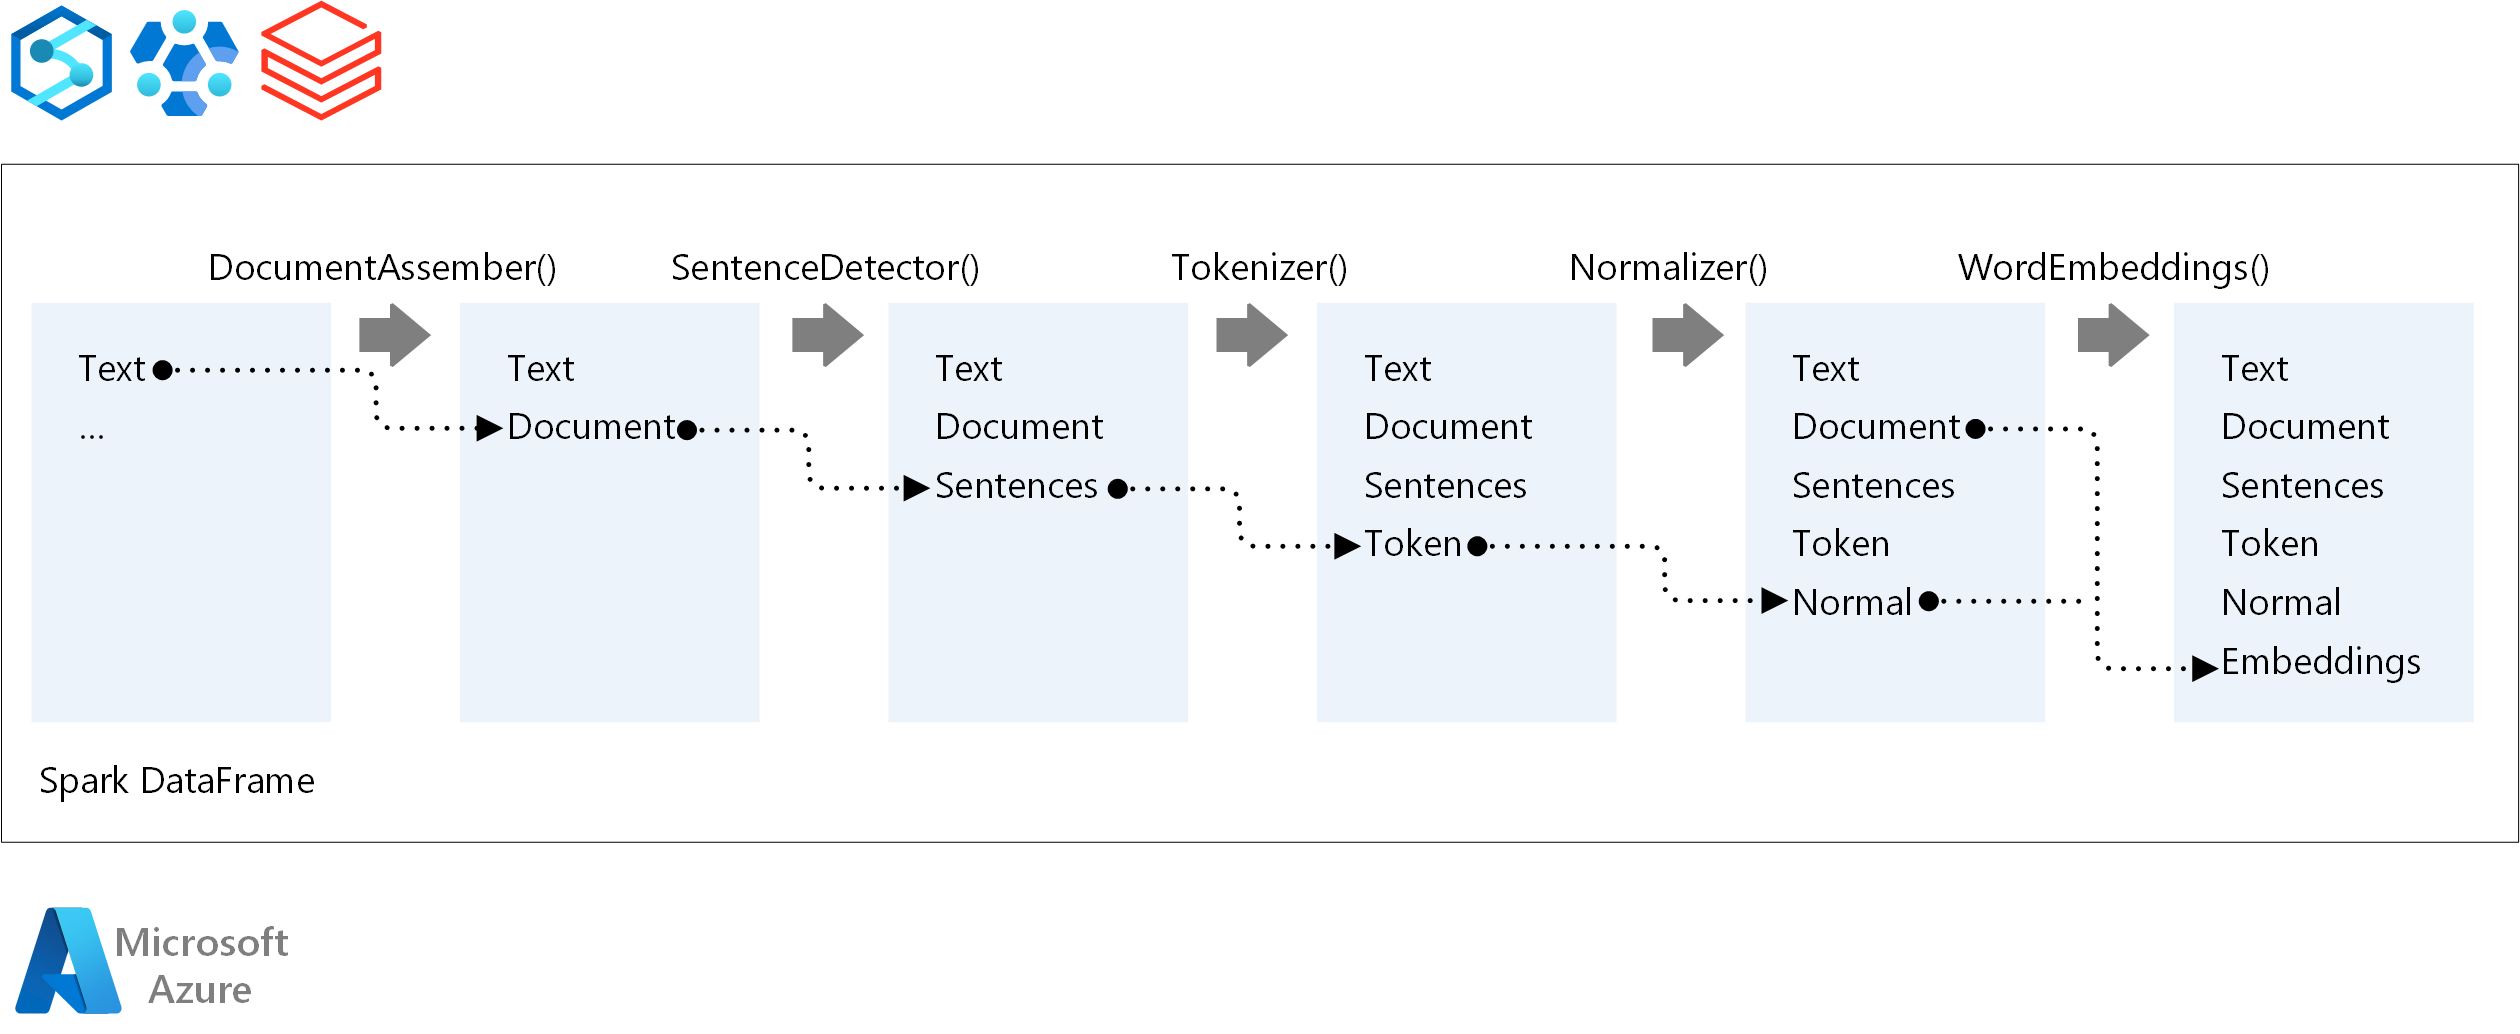 Diagrama que mostra os estágios do pipeline N L P, como montagem de documentos, deteção de frases, tokenização, normalização e incorporação de palavras.